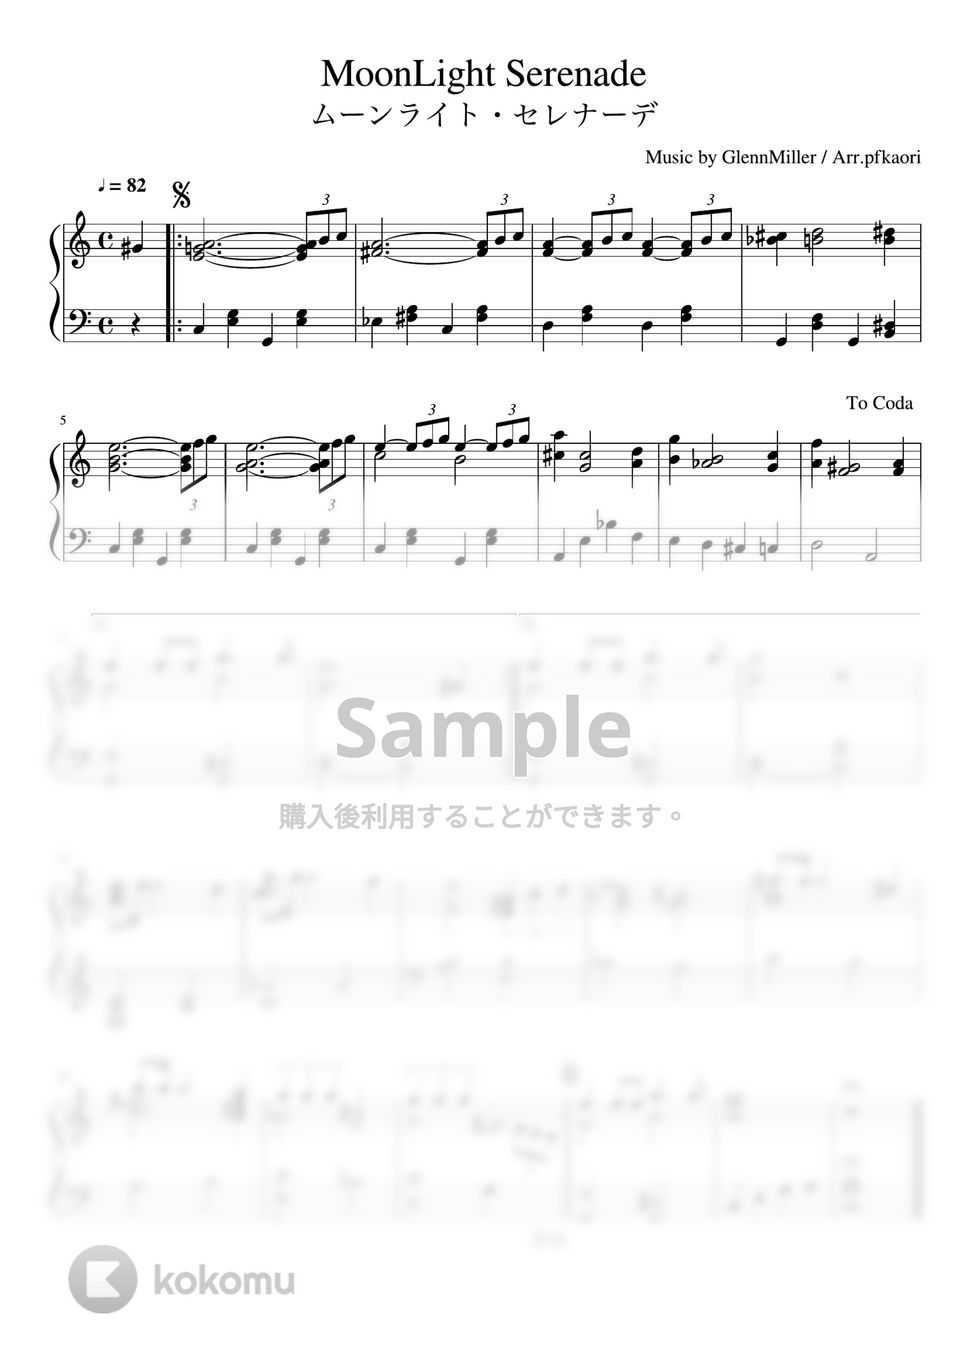 グレンミラー - ムーンライトセレナーデ (Am・ピアノソロ中級) by pfkaori